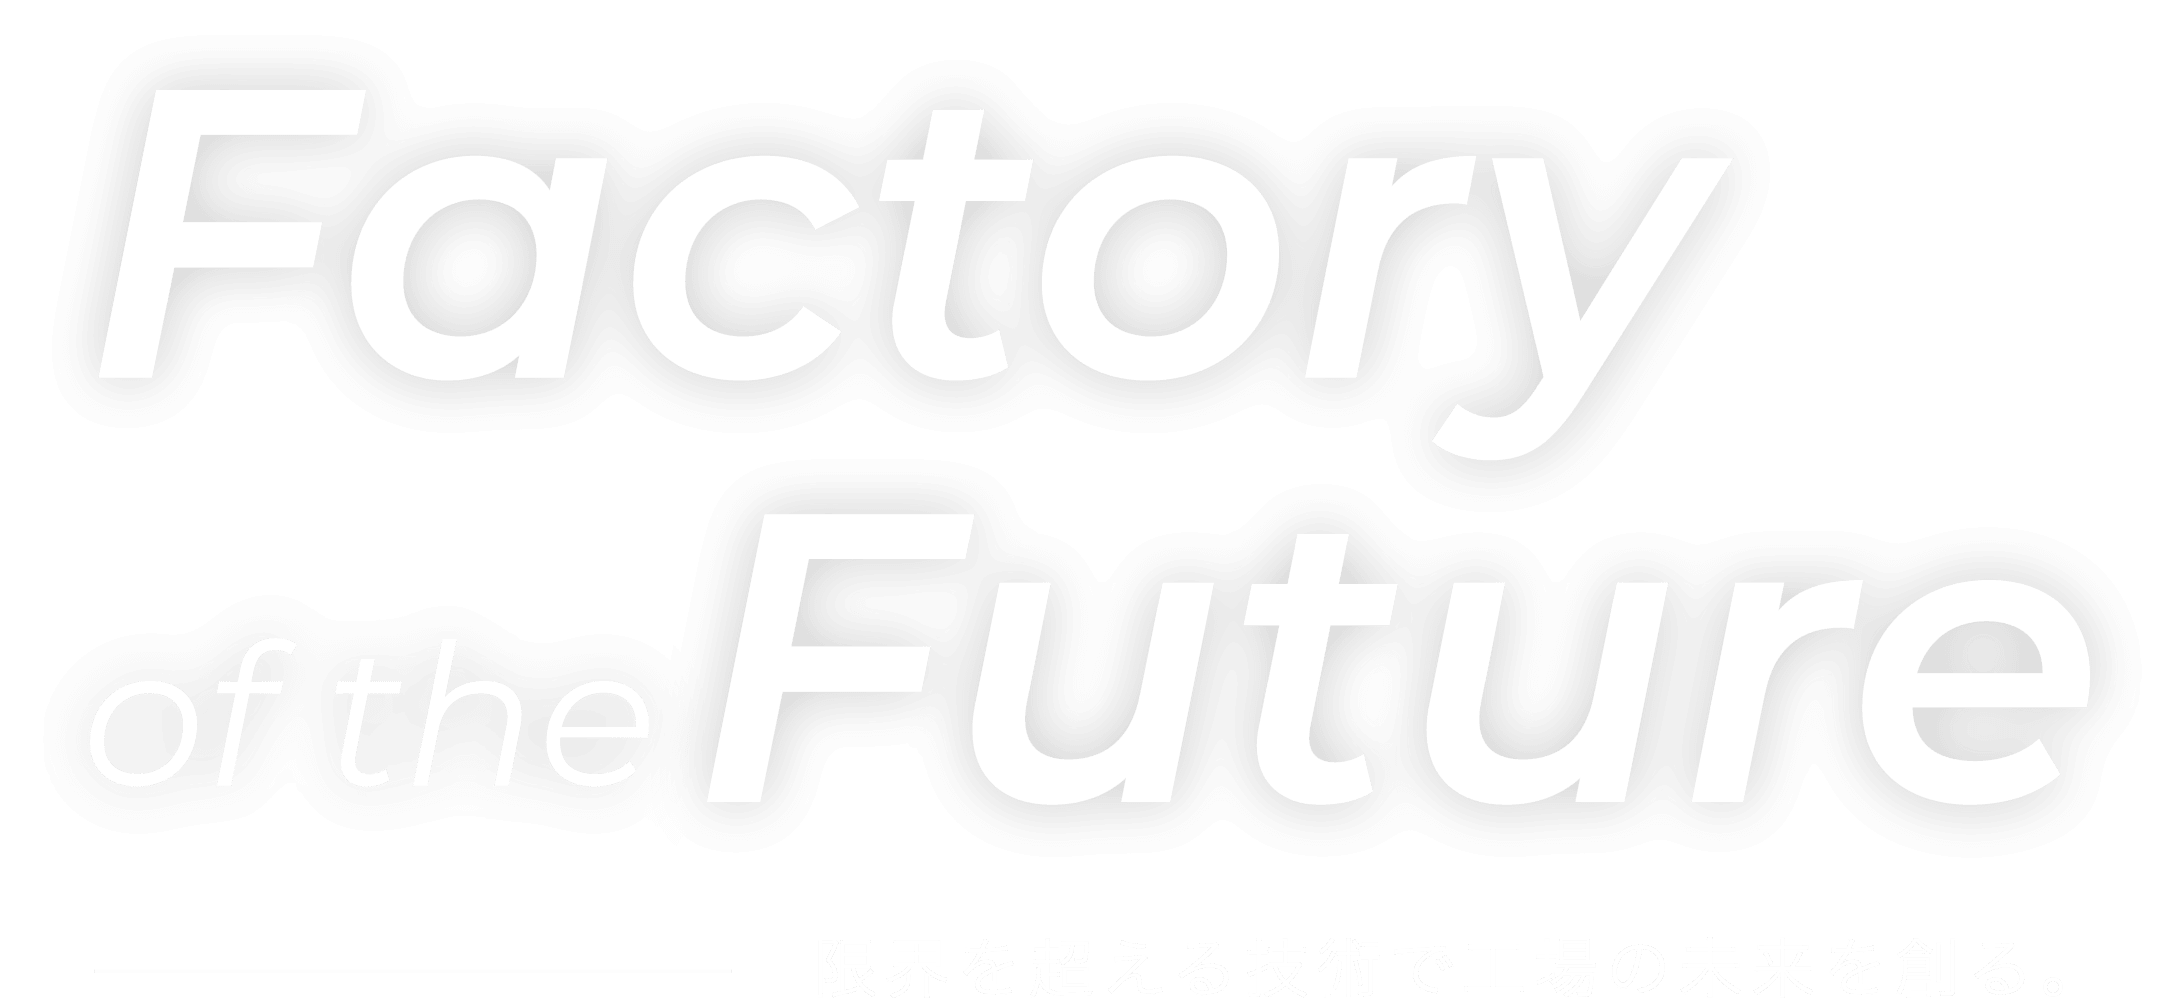 Factory of the Future 限界を超える技術で向上の未来を創る。